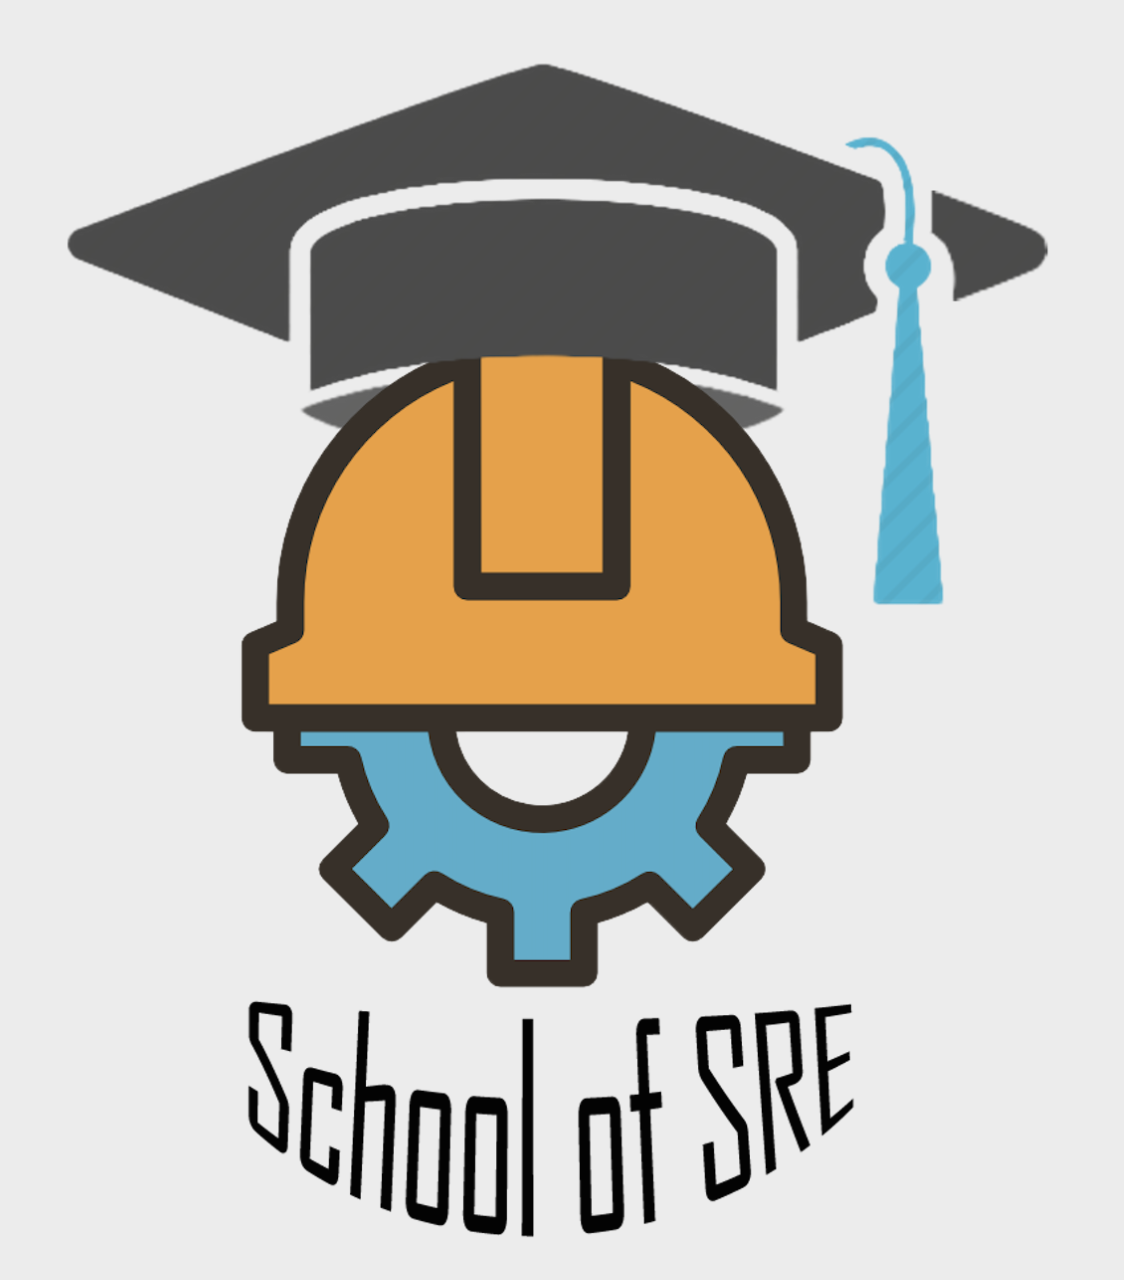 School of SRE